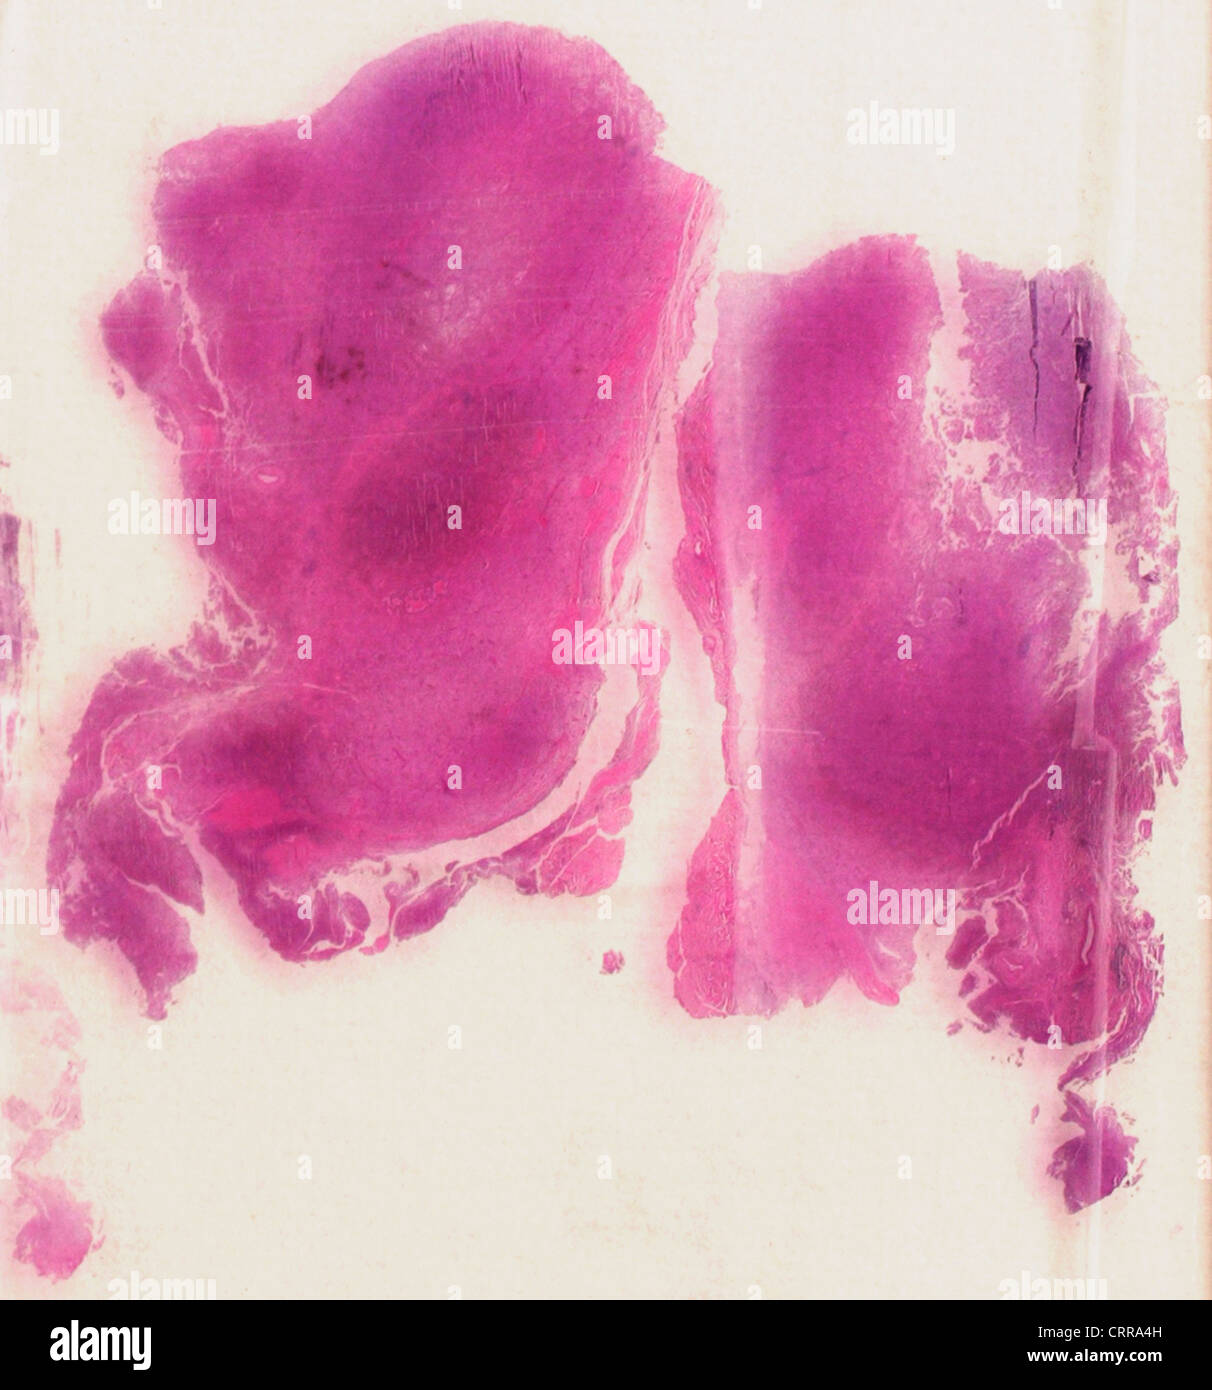 Cytology slide showing malignant melanoma. Stock Photo